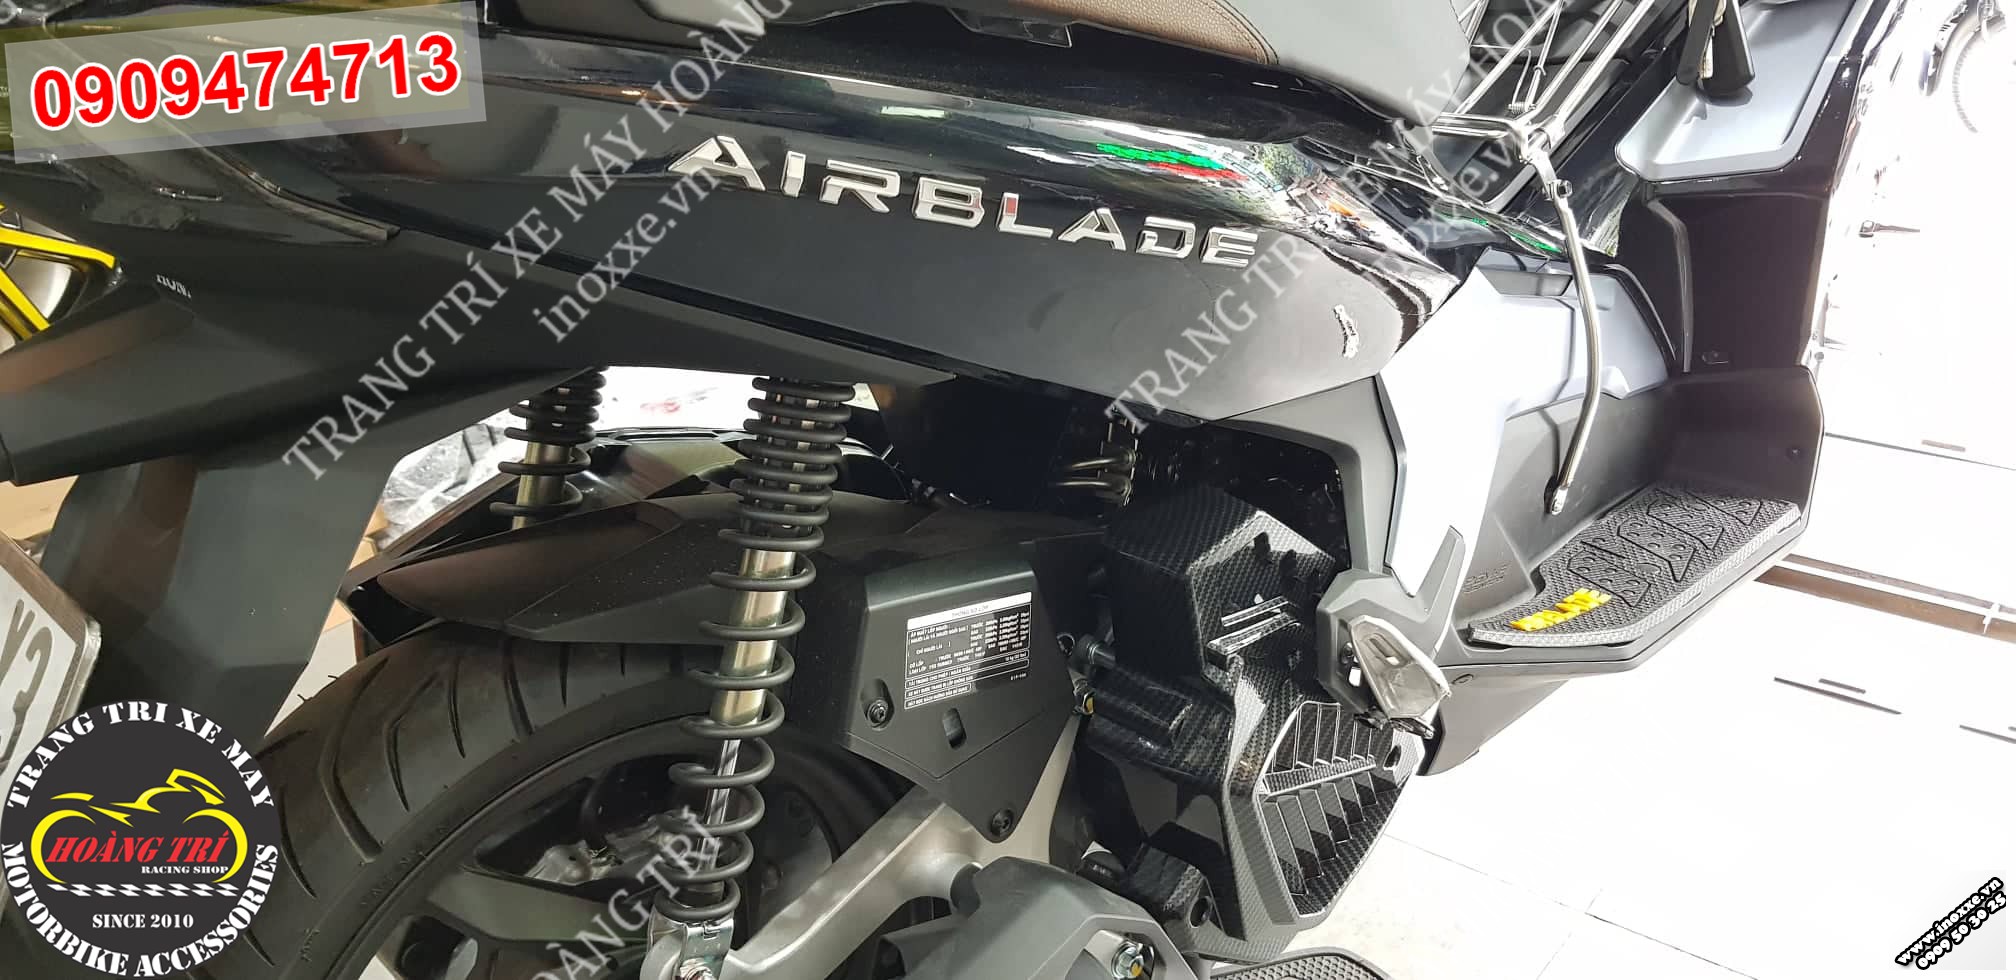 Phụ kiện trang trí Airblade 2020 - Ốp két nước sơn Carbon